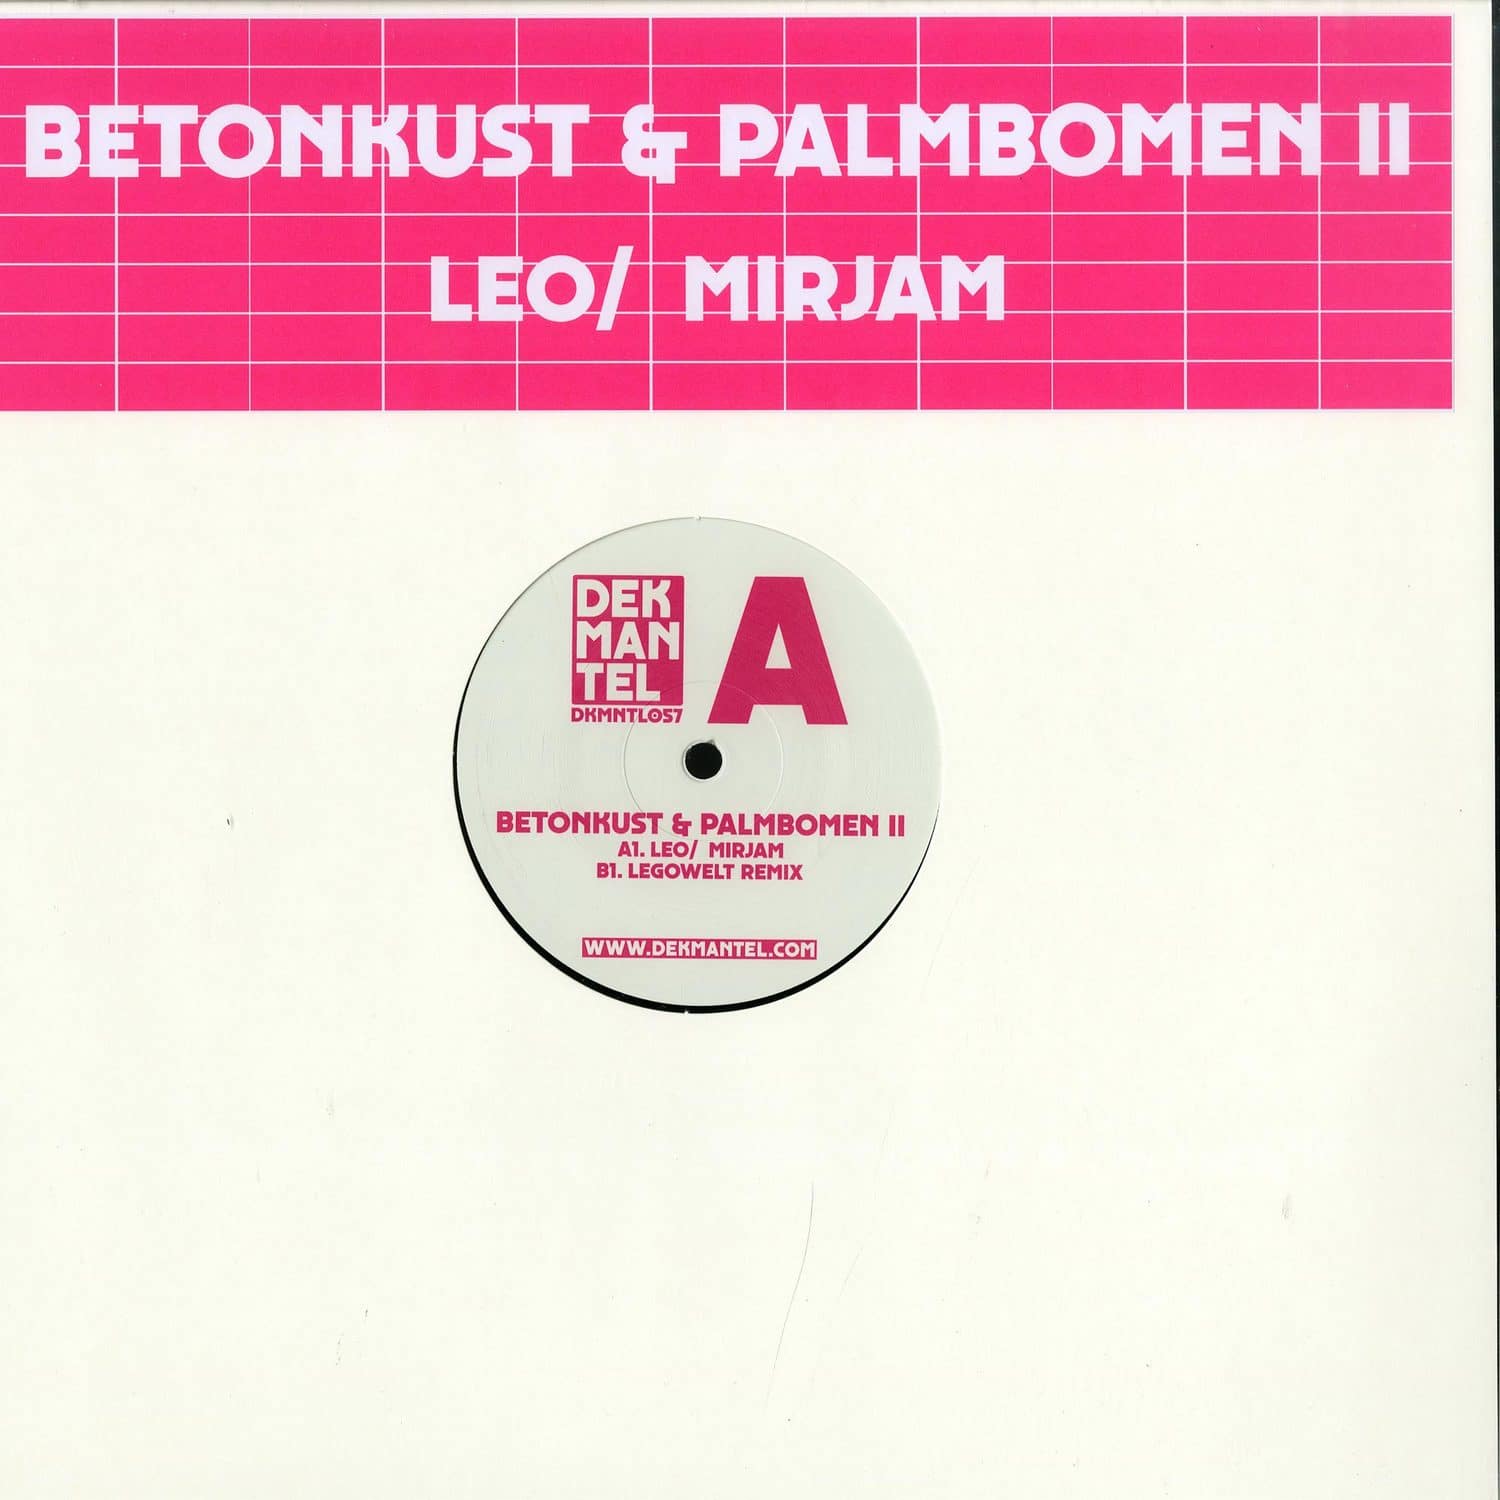 Betonkust & Palmbomen II - LEO / MIRJAM 